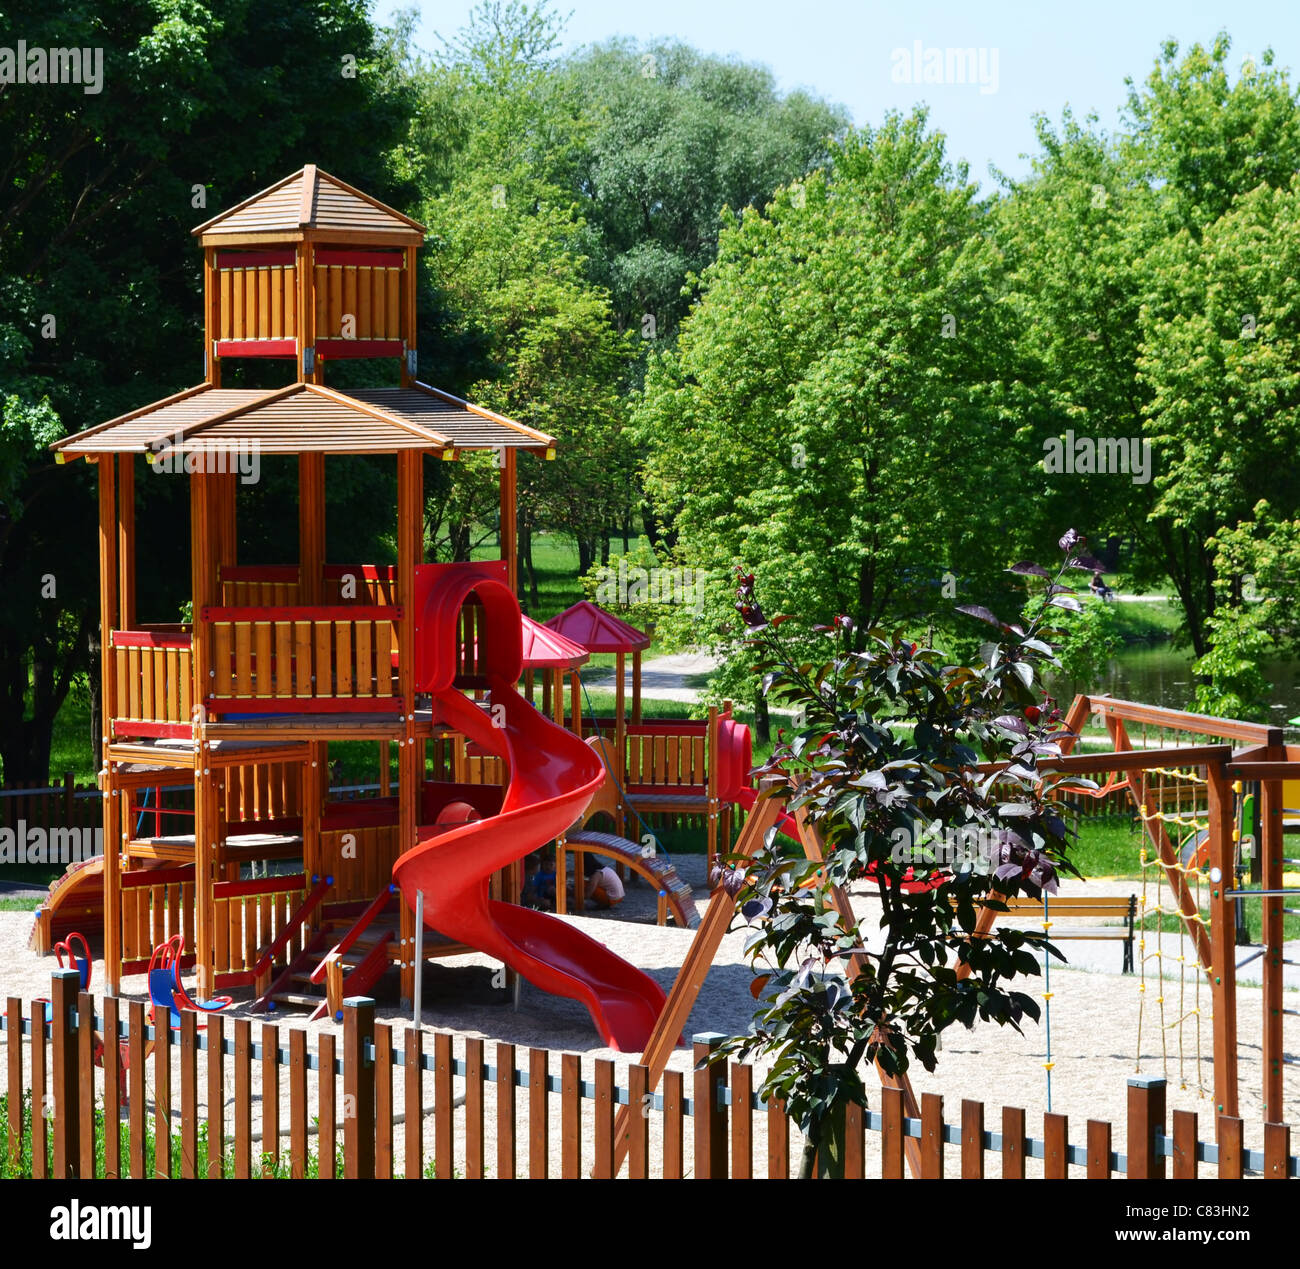 Hölzerne Burg mit Rutsche auf einem modernen Spielplatz befindet sich in einem Freizeitpark - eine natürliche, gesunde Umgebung für Kinder. Stockfoto